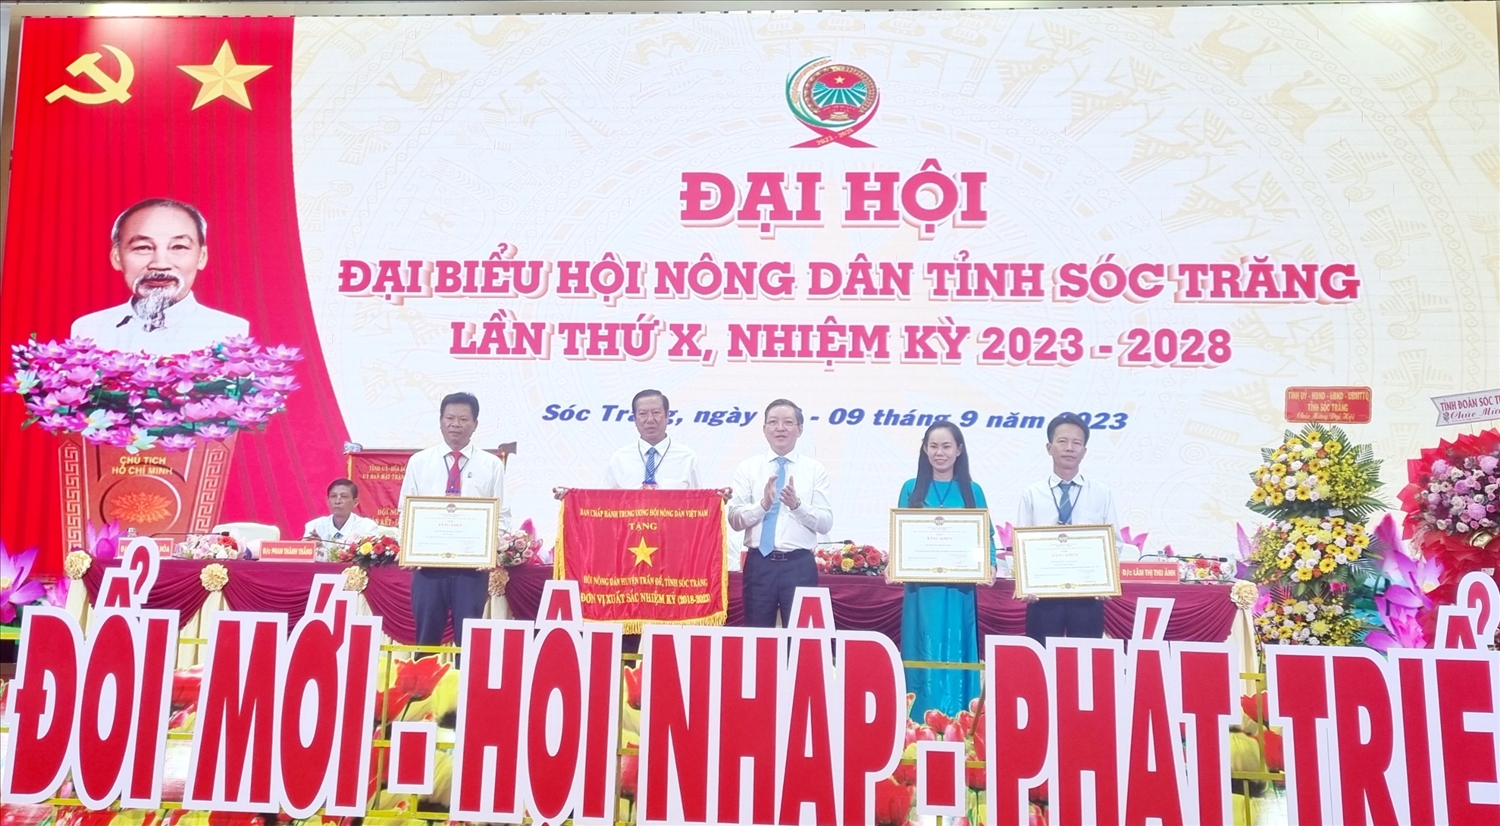 Ông Lương Quốc Đoàn, Chủ tịch BCH Trung ương Hội nông dân Việt Nam trao cờ và Bằng khen cho 4 tập thể hoàn thành xuất sắc công tác Hội trong nhiệm kỳ 2018-2023